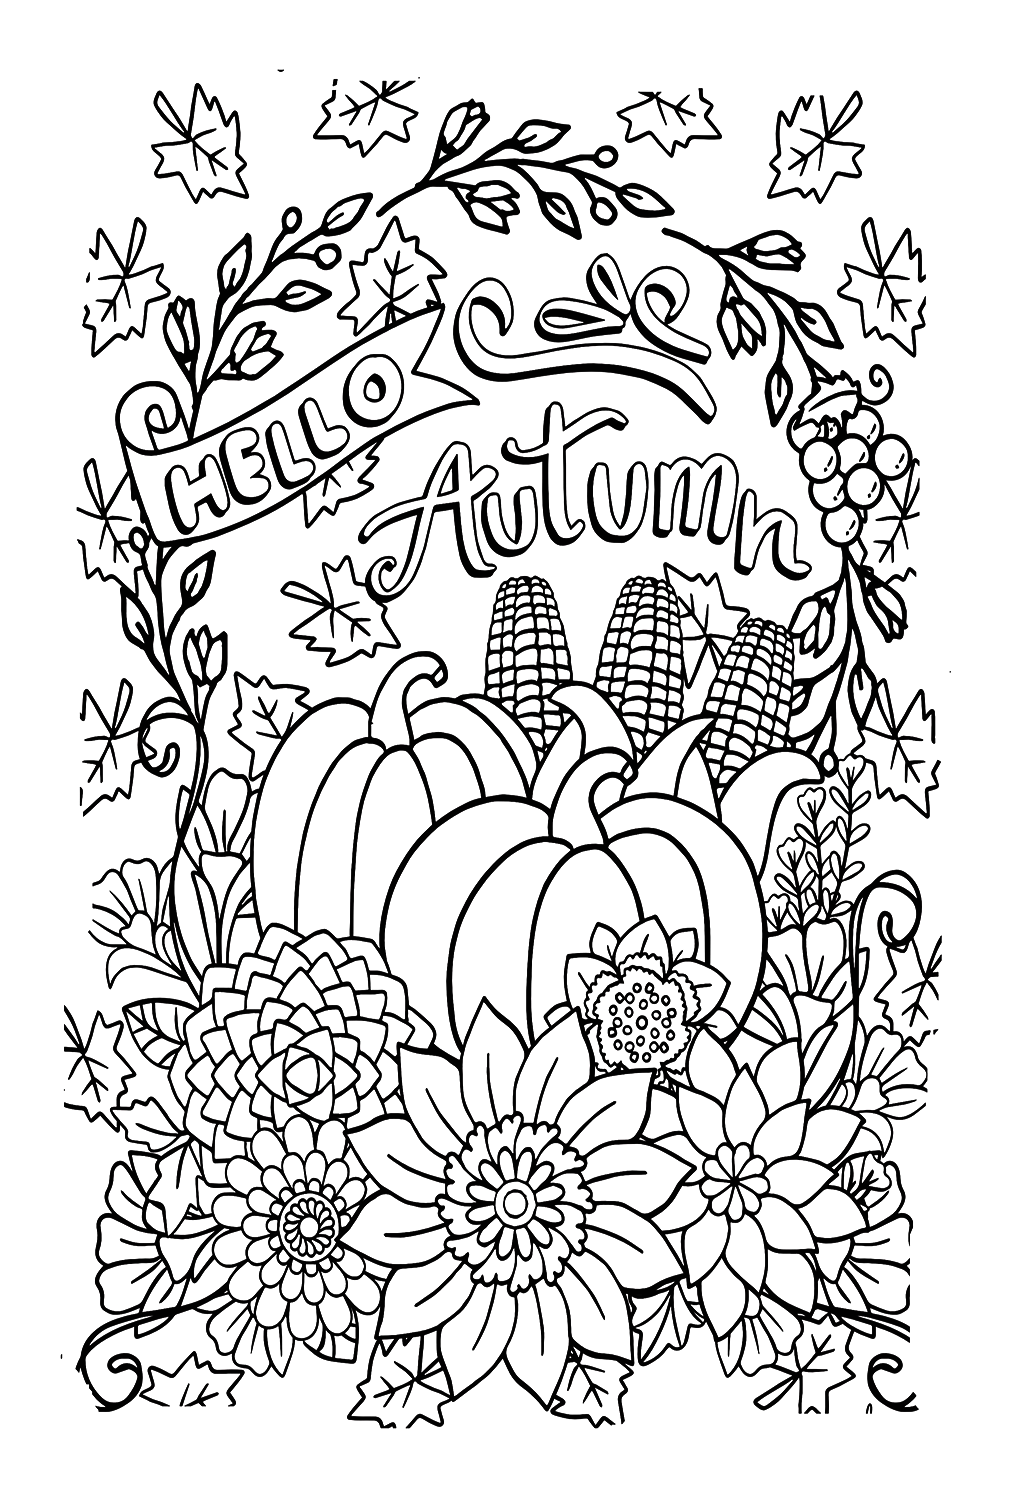 Páginas para colorear de otoño feliz del otoño